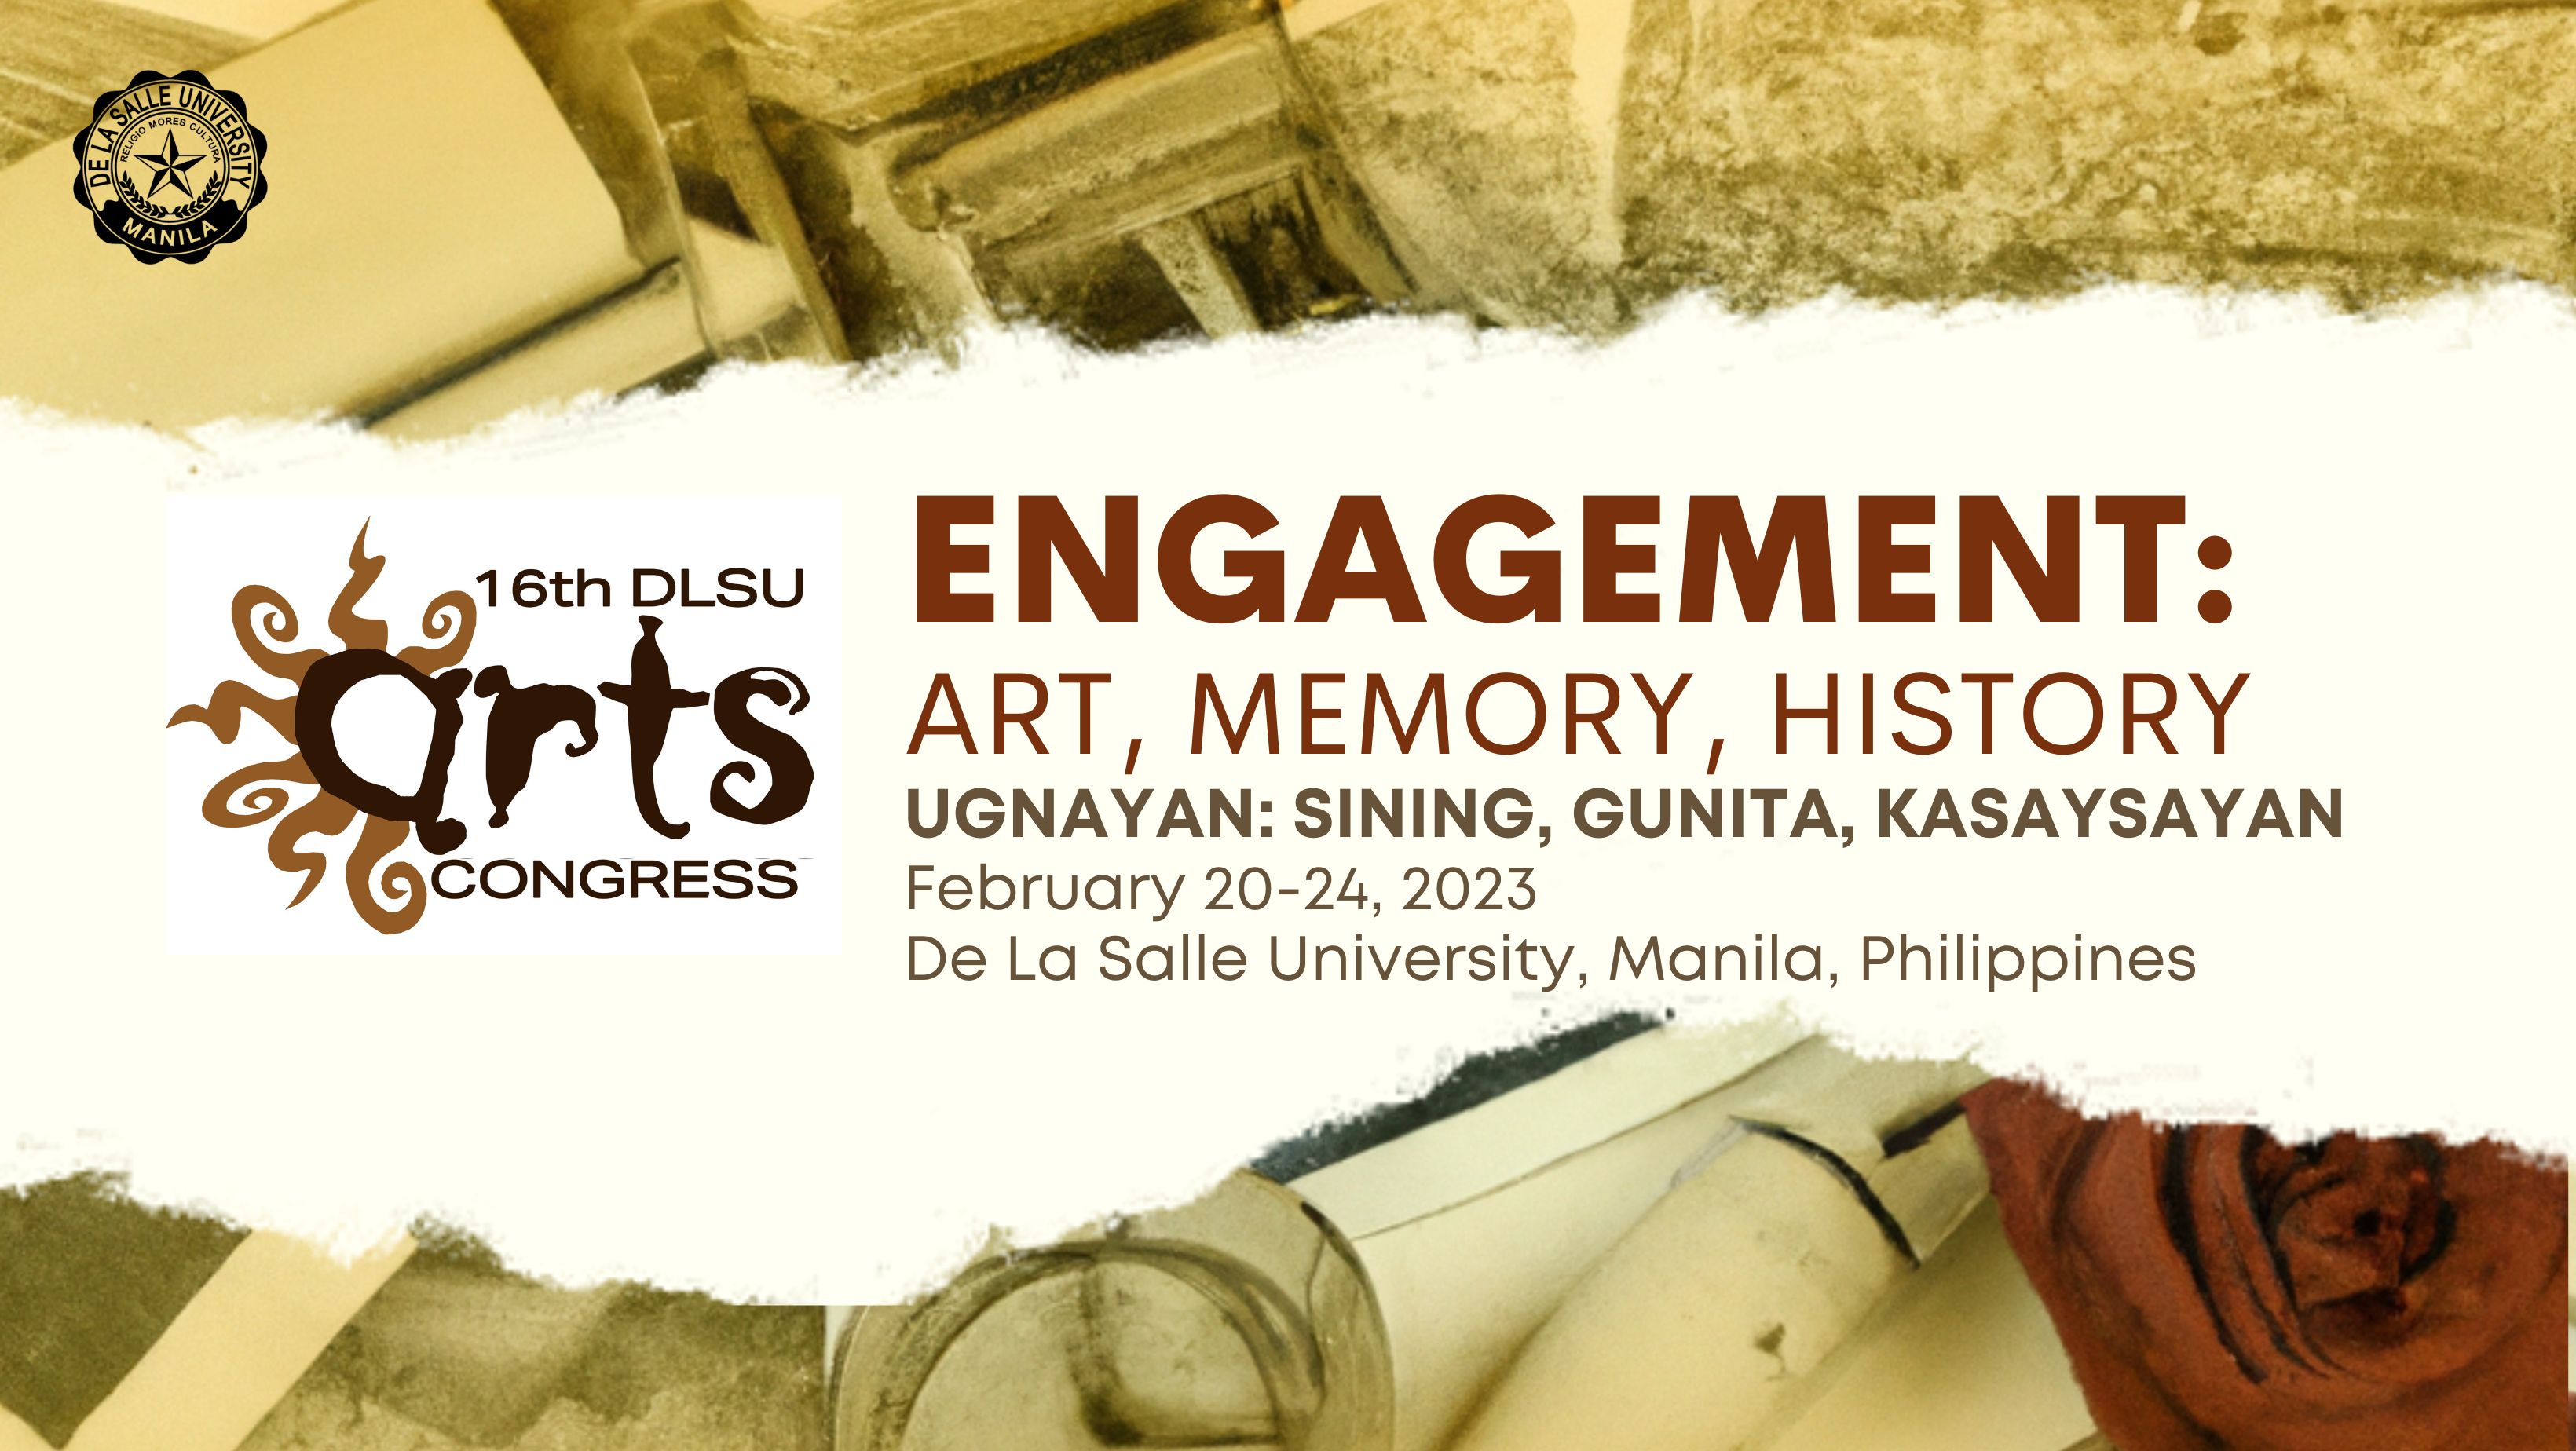 2023: 16th DLSU Arts Congress